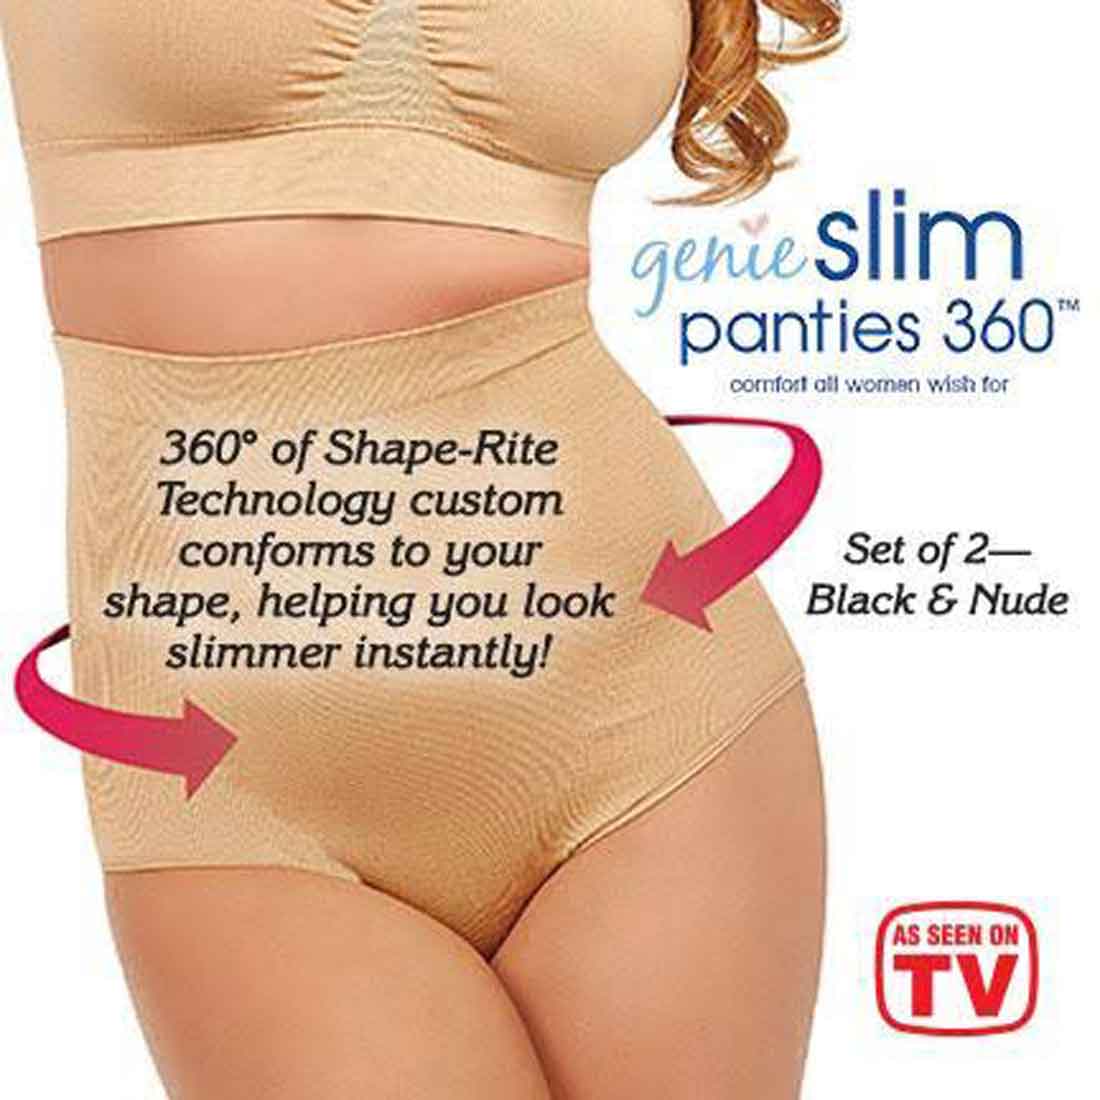 Genie Slim Panties - 360 Comfort Fit for All Women | As Seen on TV